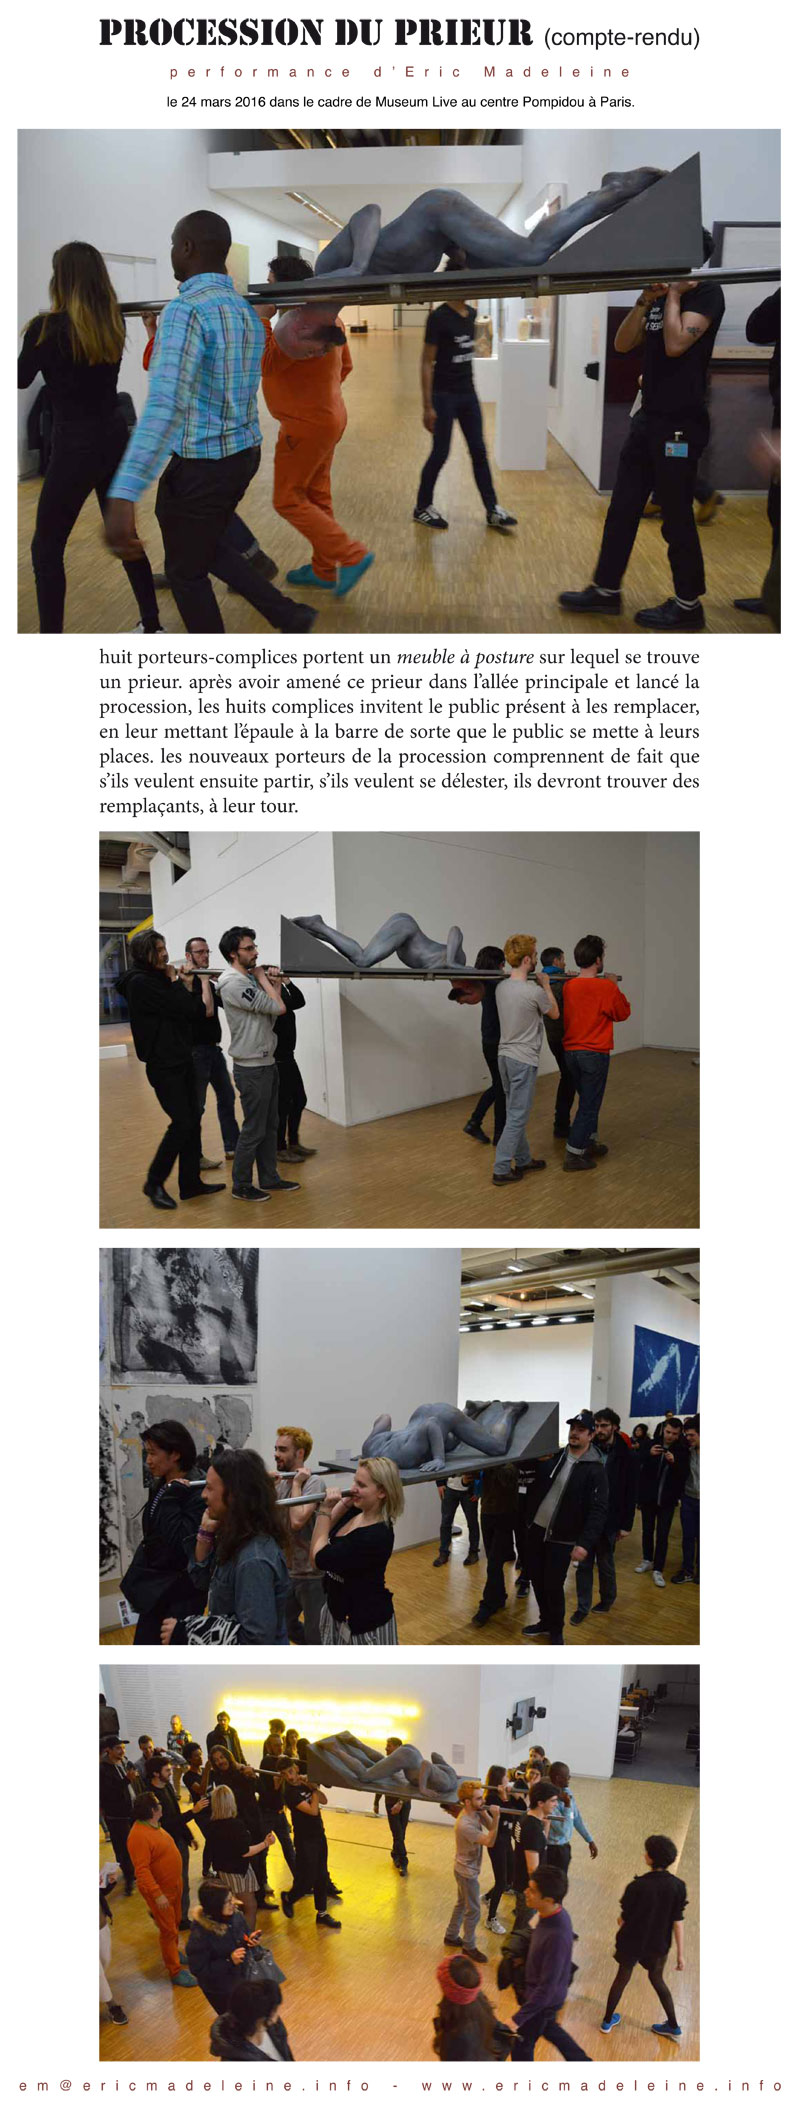 eric madeleine centre pompidou museum live